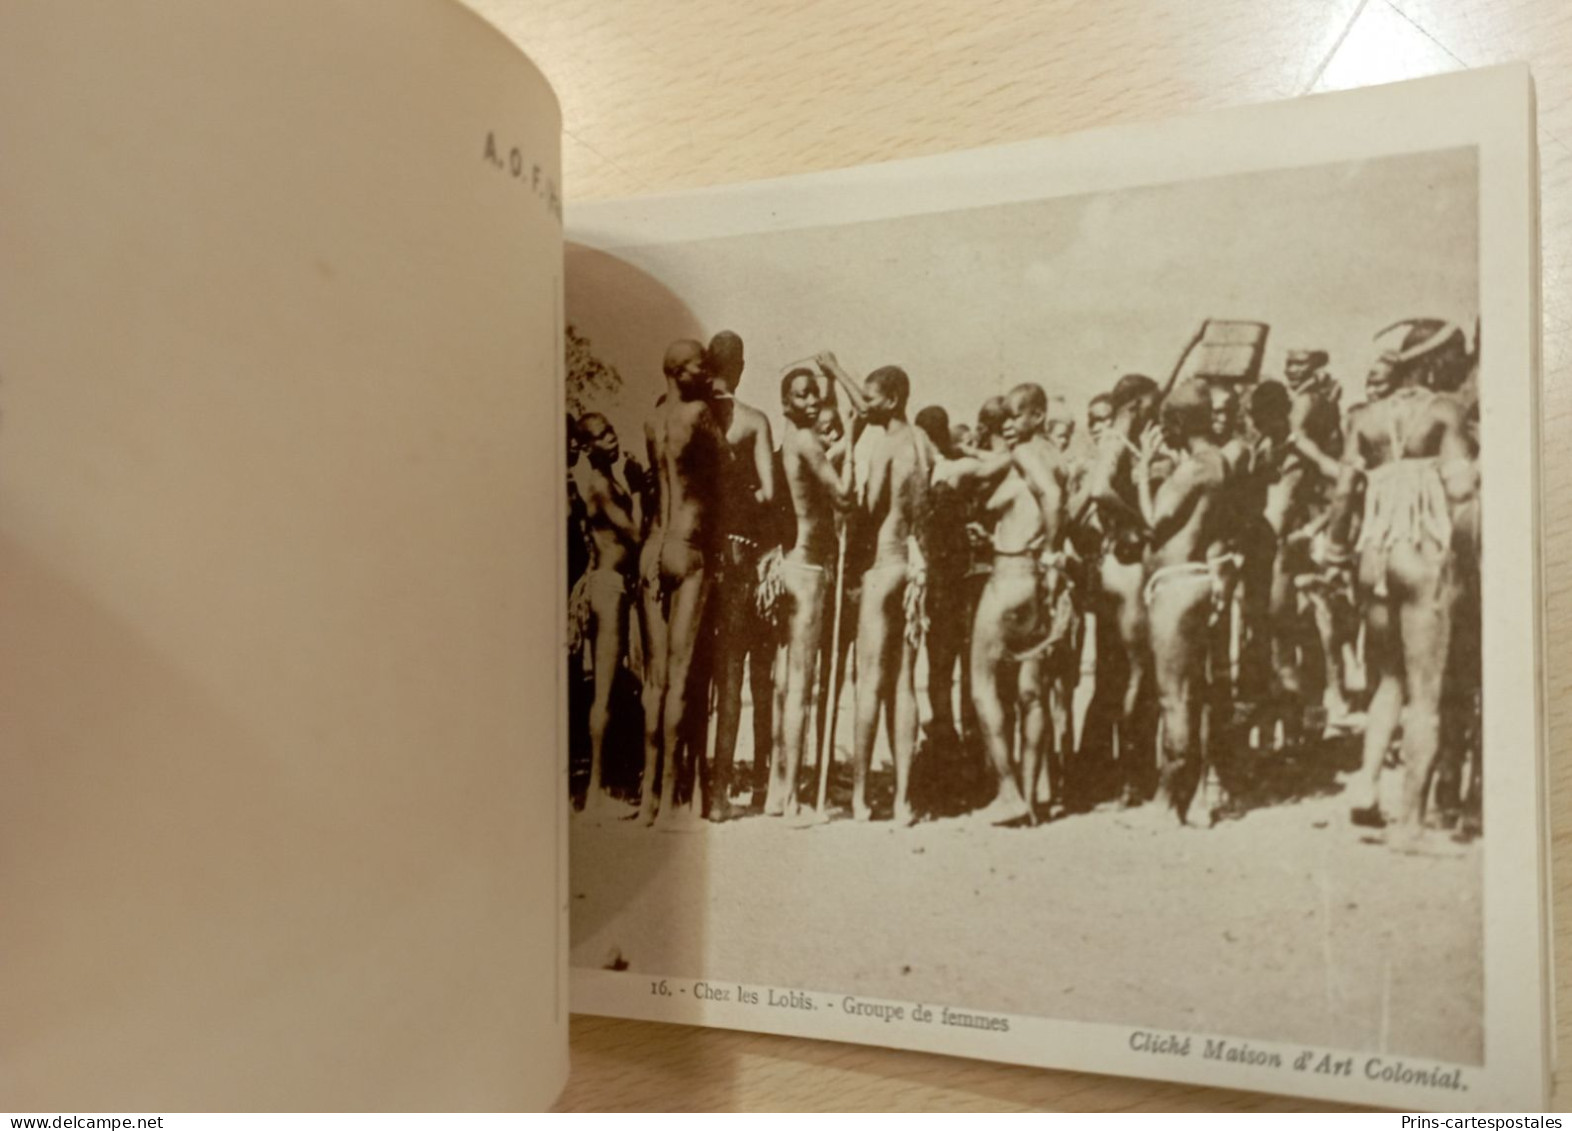 Carnet 20 cartes de la Haute Volta chez les Lobis - Albums des colonies édités par la maison d'Art Colonial